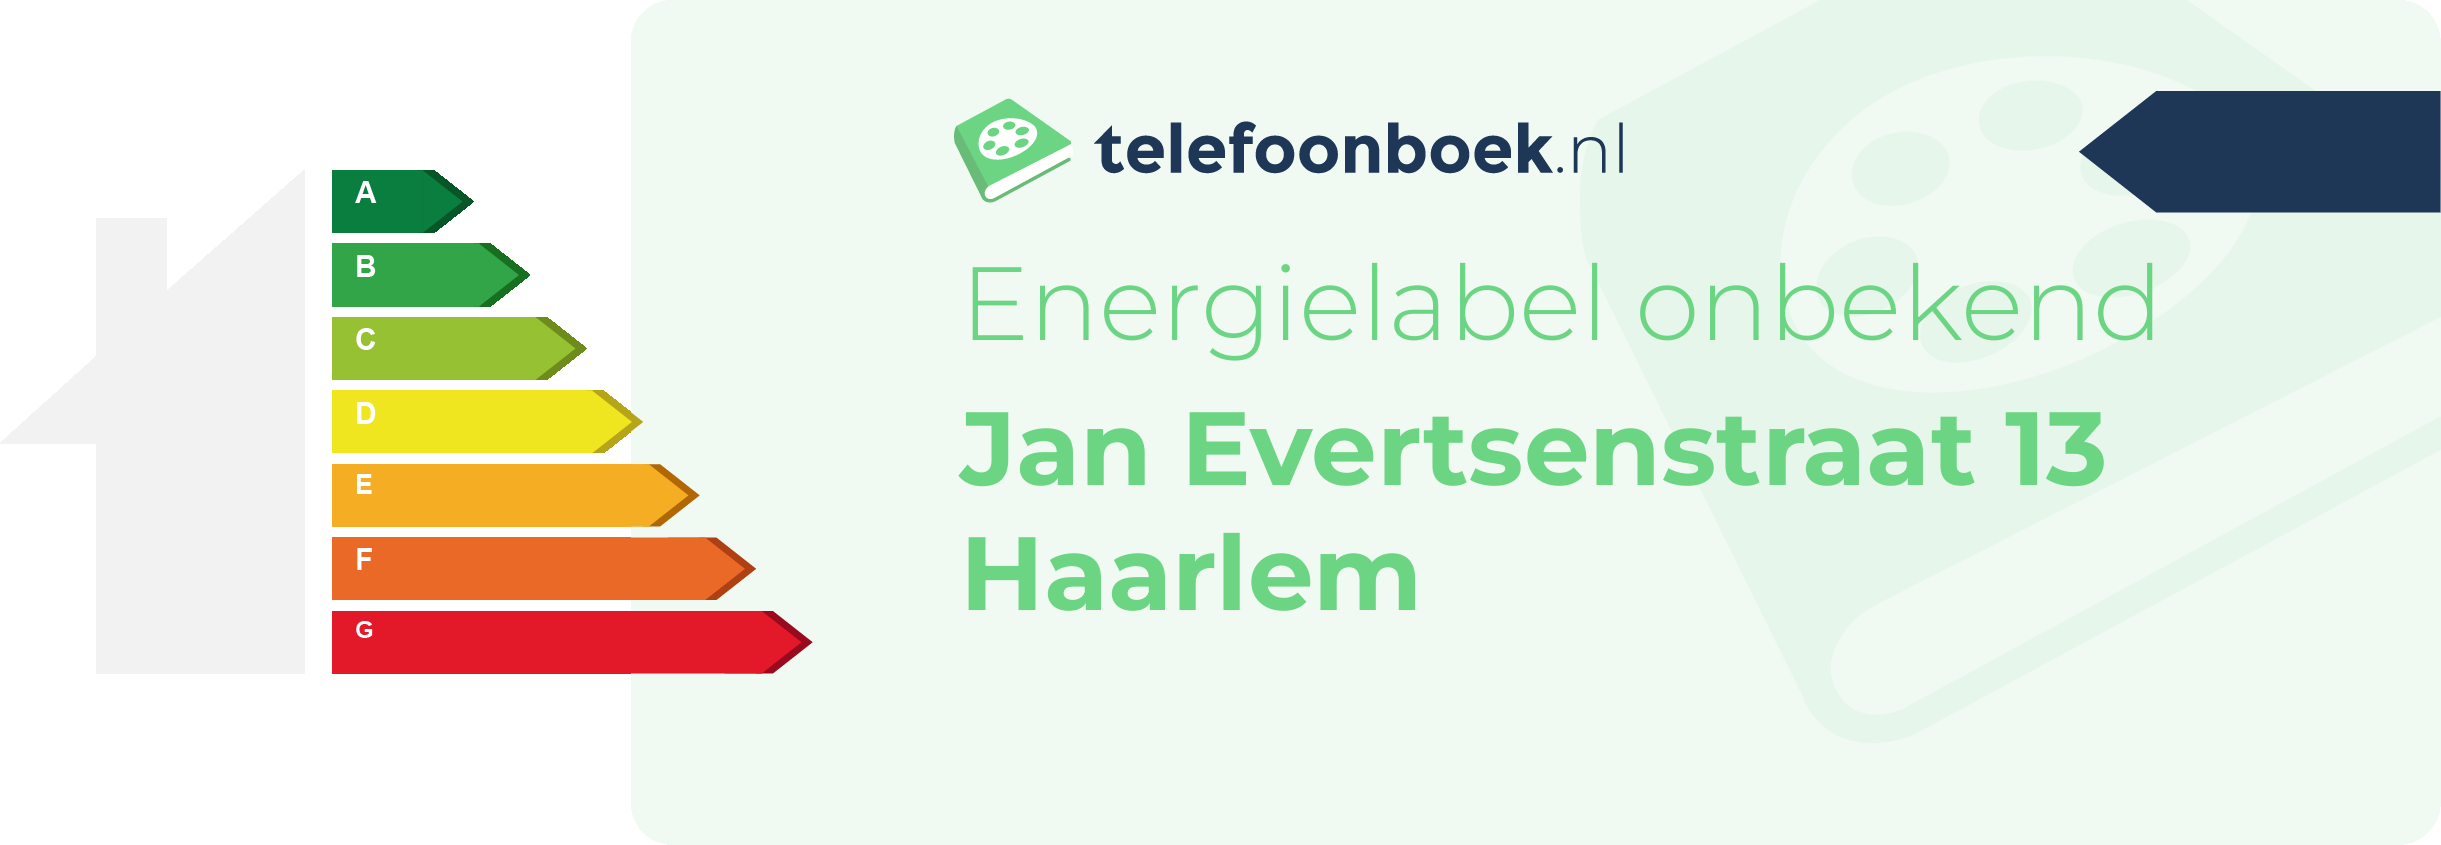 Energielabel Jan Evertsenstraat 13 Haarlem